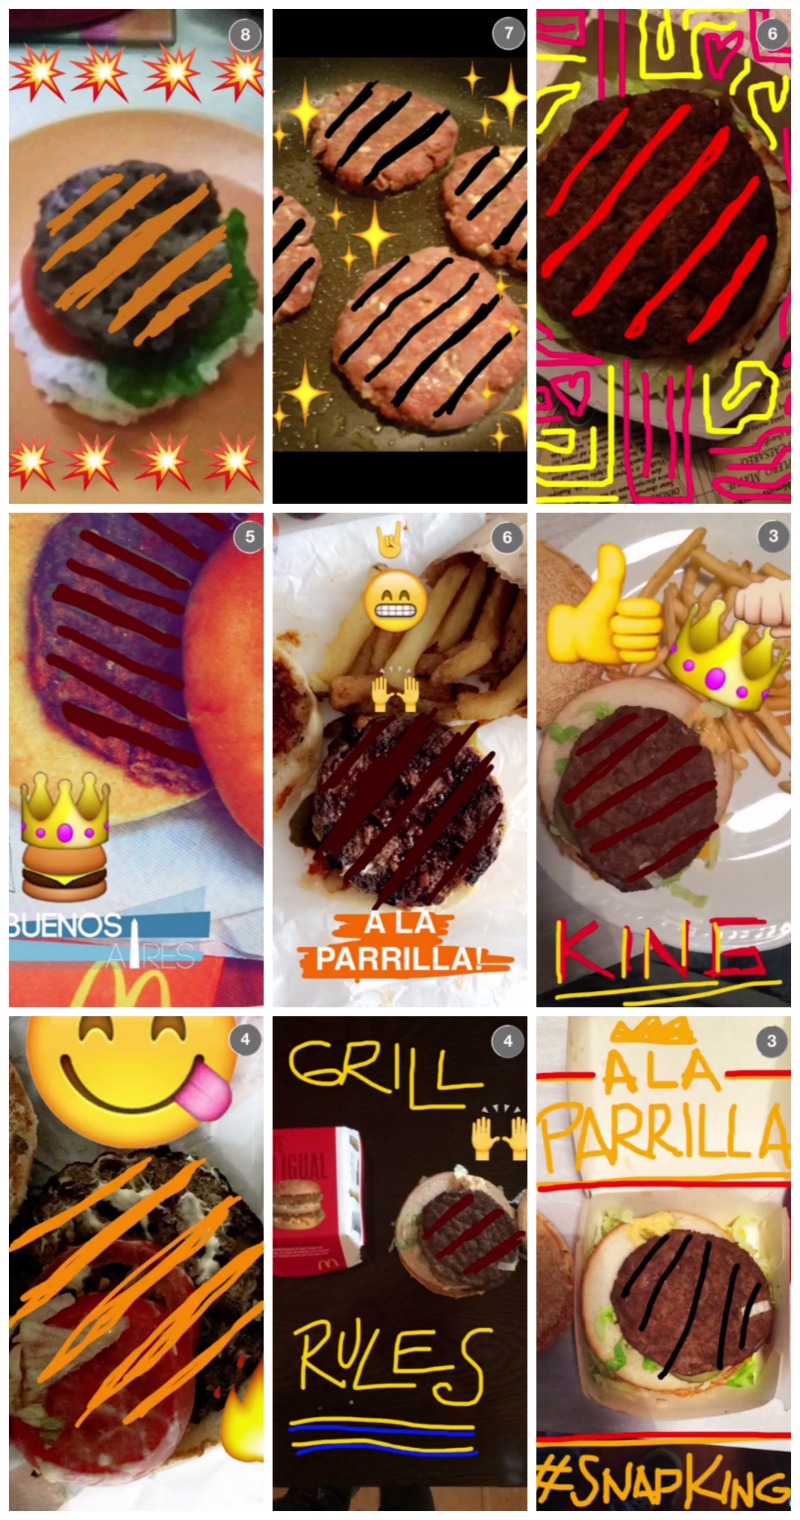 burger-king-snapchat-snapking2